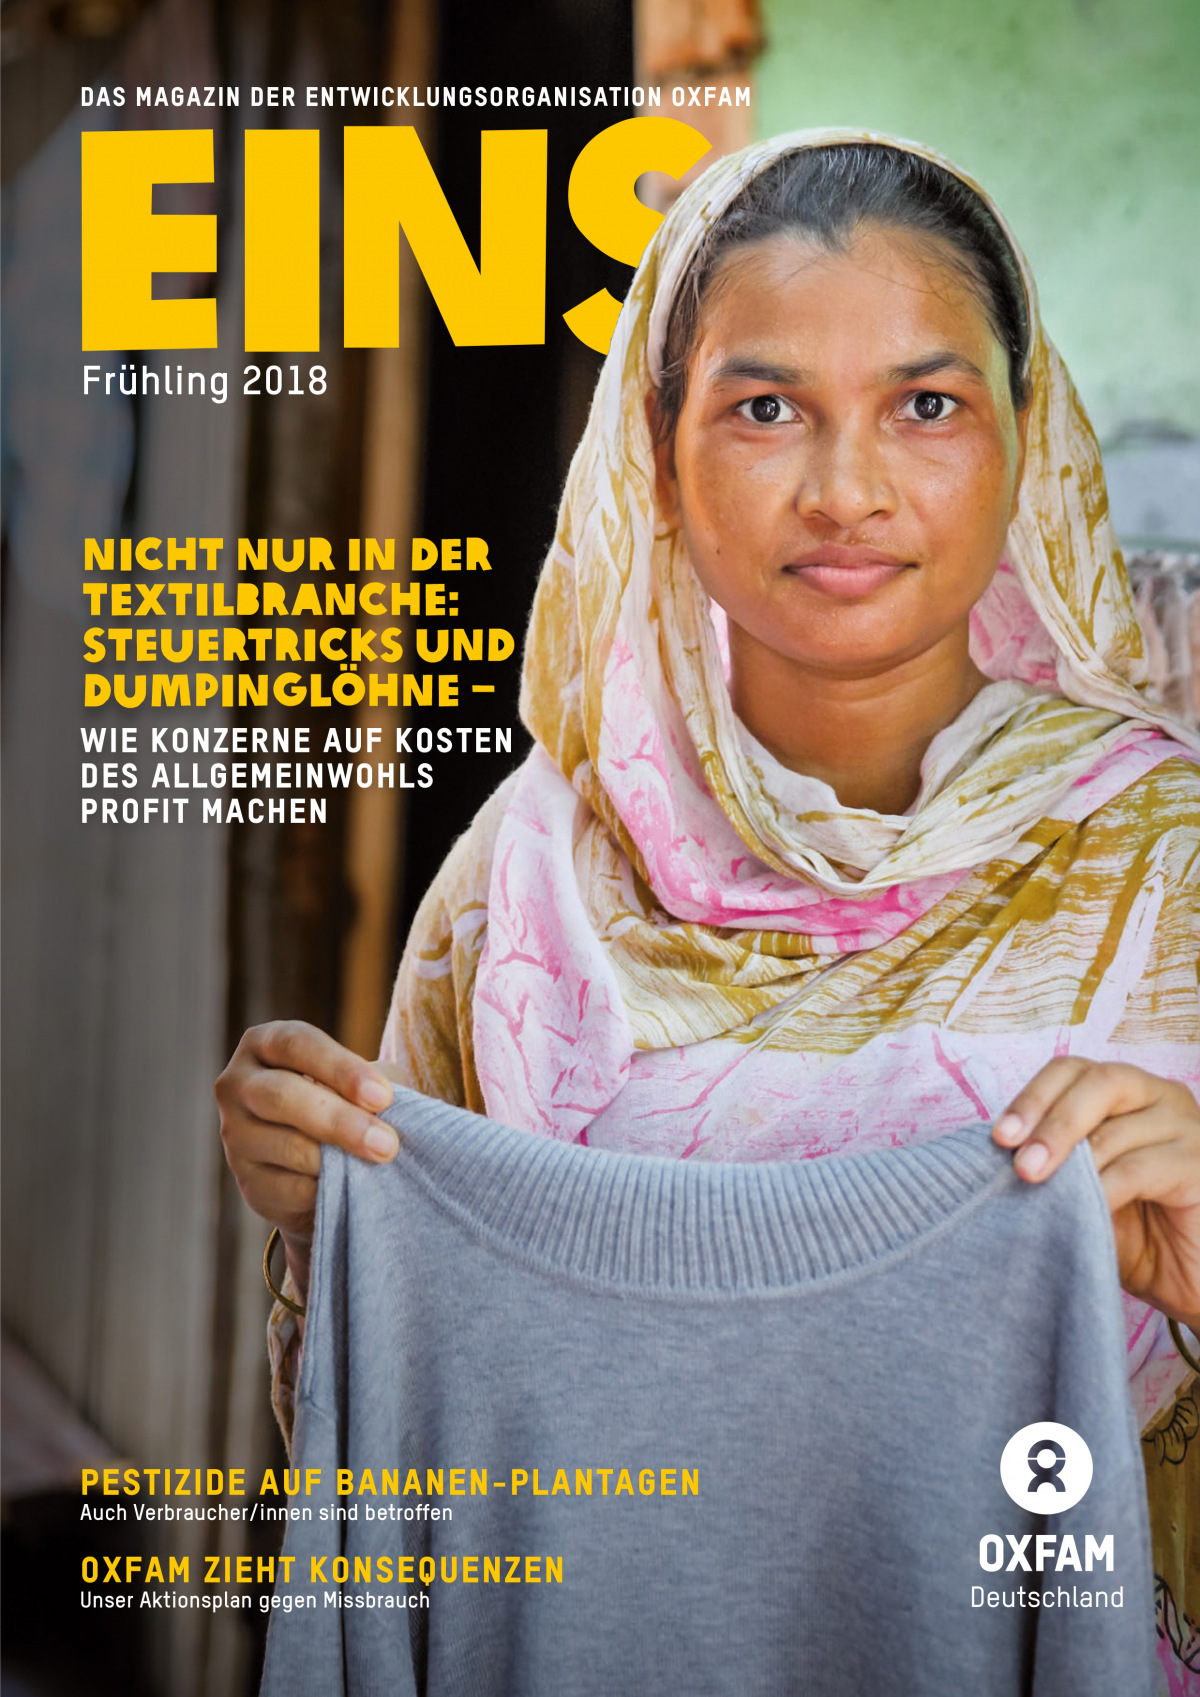 Titelbild vom Oxfam-Magazin EINS (Frühling 2018)